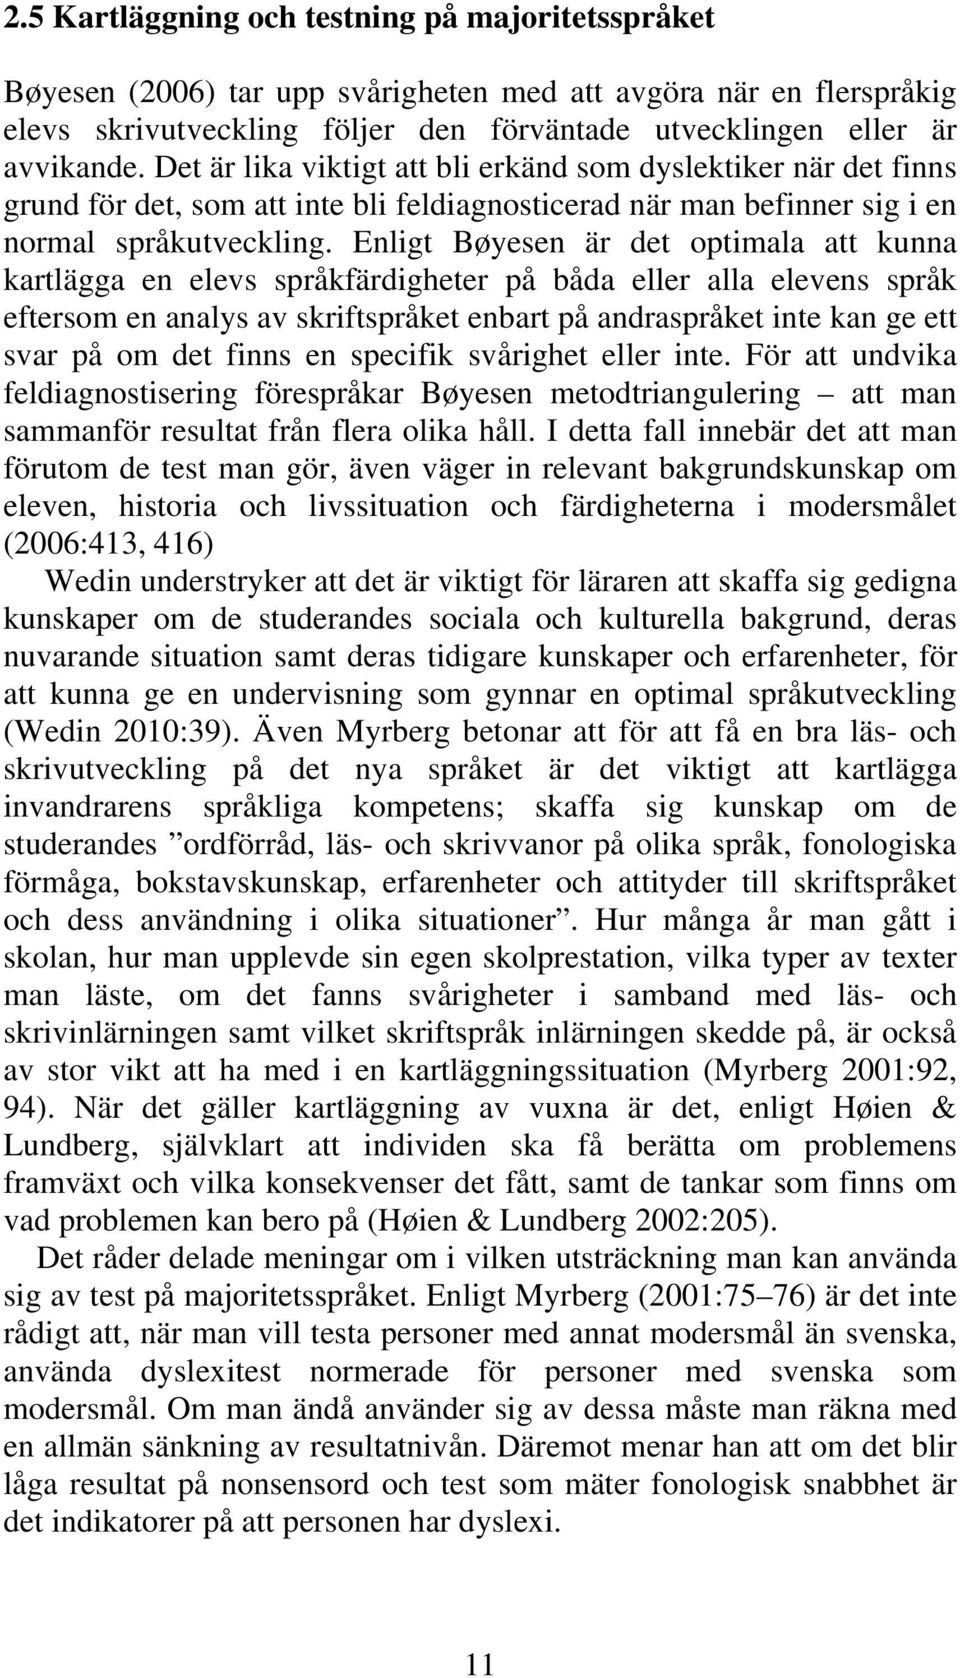 Enligt Bøyesen är det optimala att kunna kartlägga en elevs språkfärdigheter på båda eller alla elevens språk eftersom en analys av skriftspråket enbart på andraspråket inte kan ge ett svar på om det